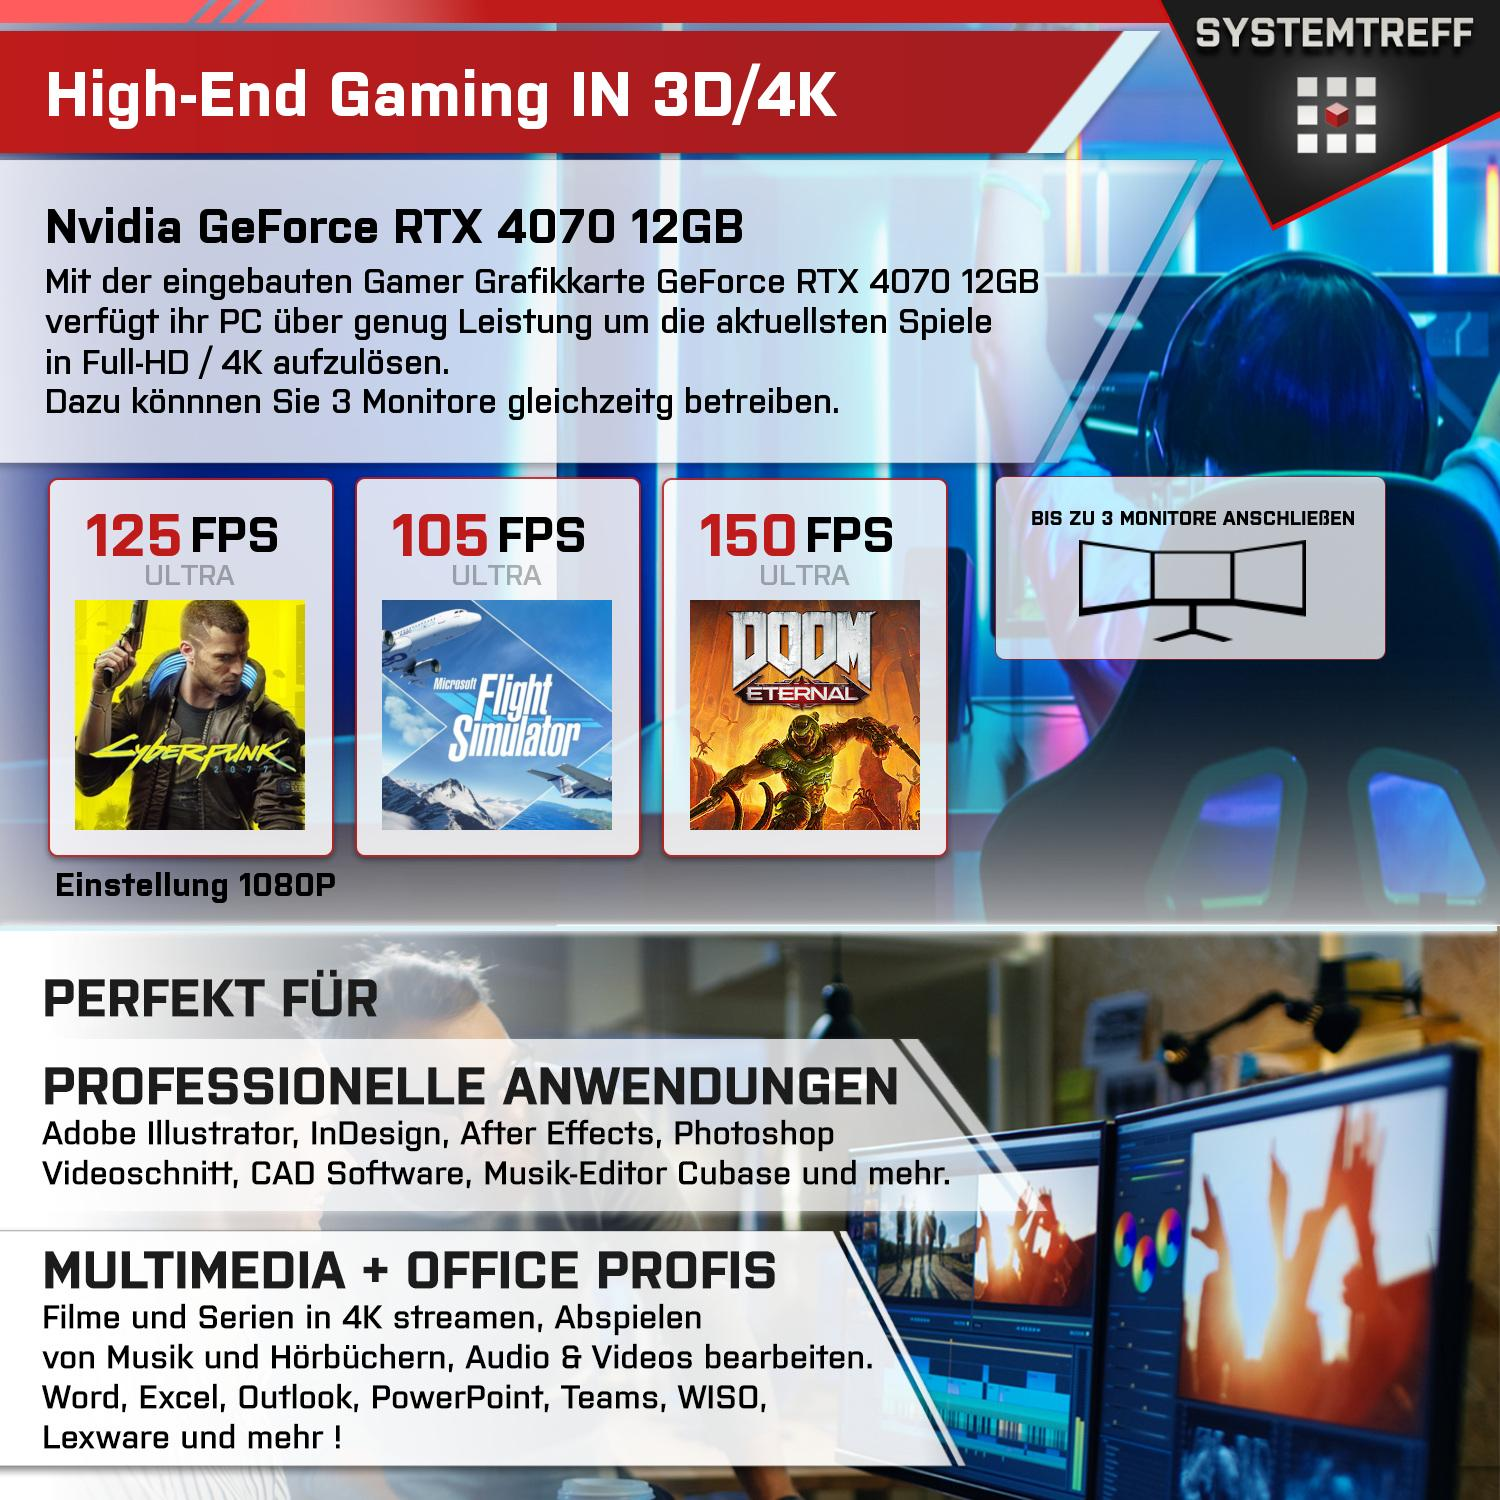 SYSTEMTREFF Gaming Komplett Intel mSSD, Prozessor, i7-12700K 12 GB Core PC 1000 Komplett 4070 Nvidia RTX mit GB GB 32 RAM, i7-12700K, 12GB GDDR6, GeForce